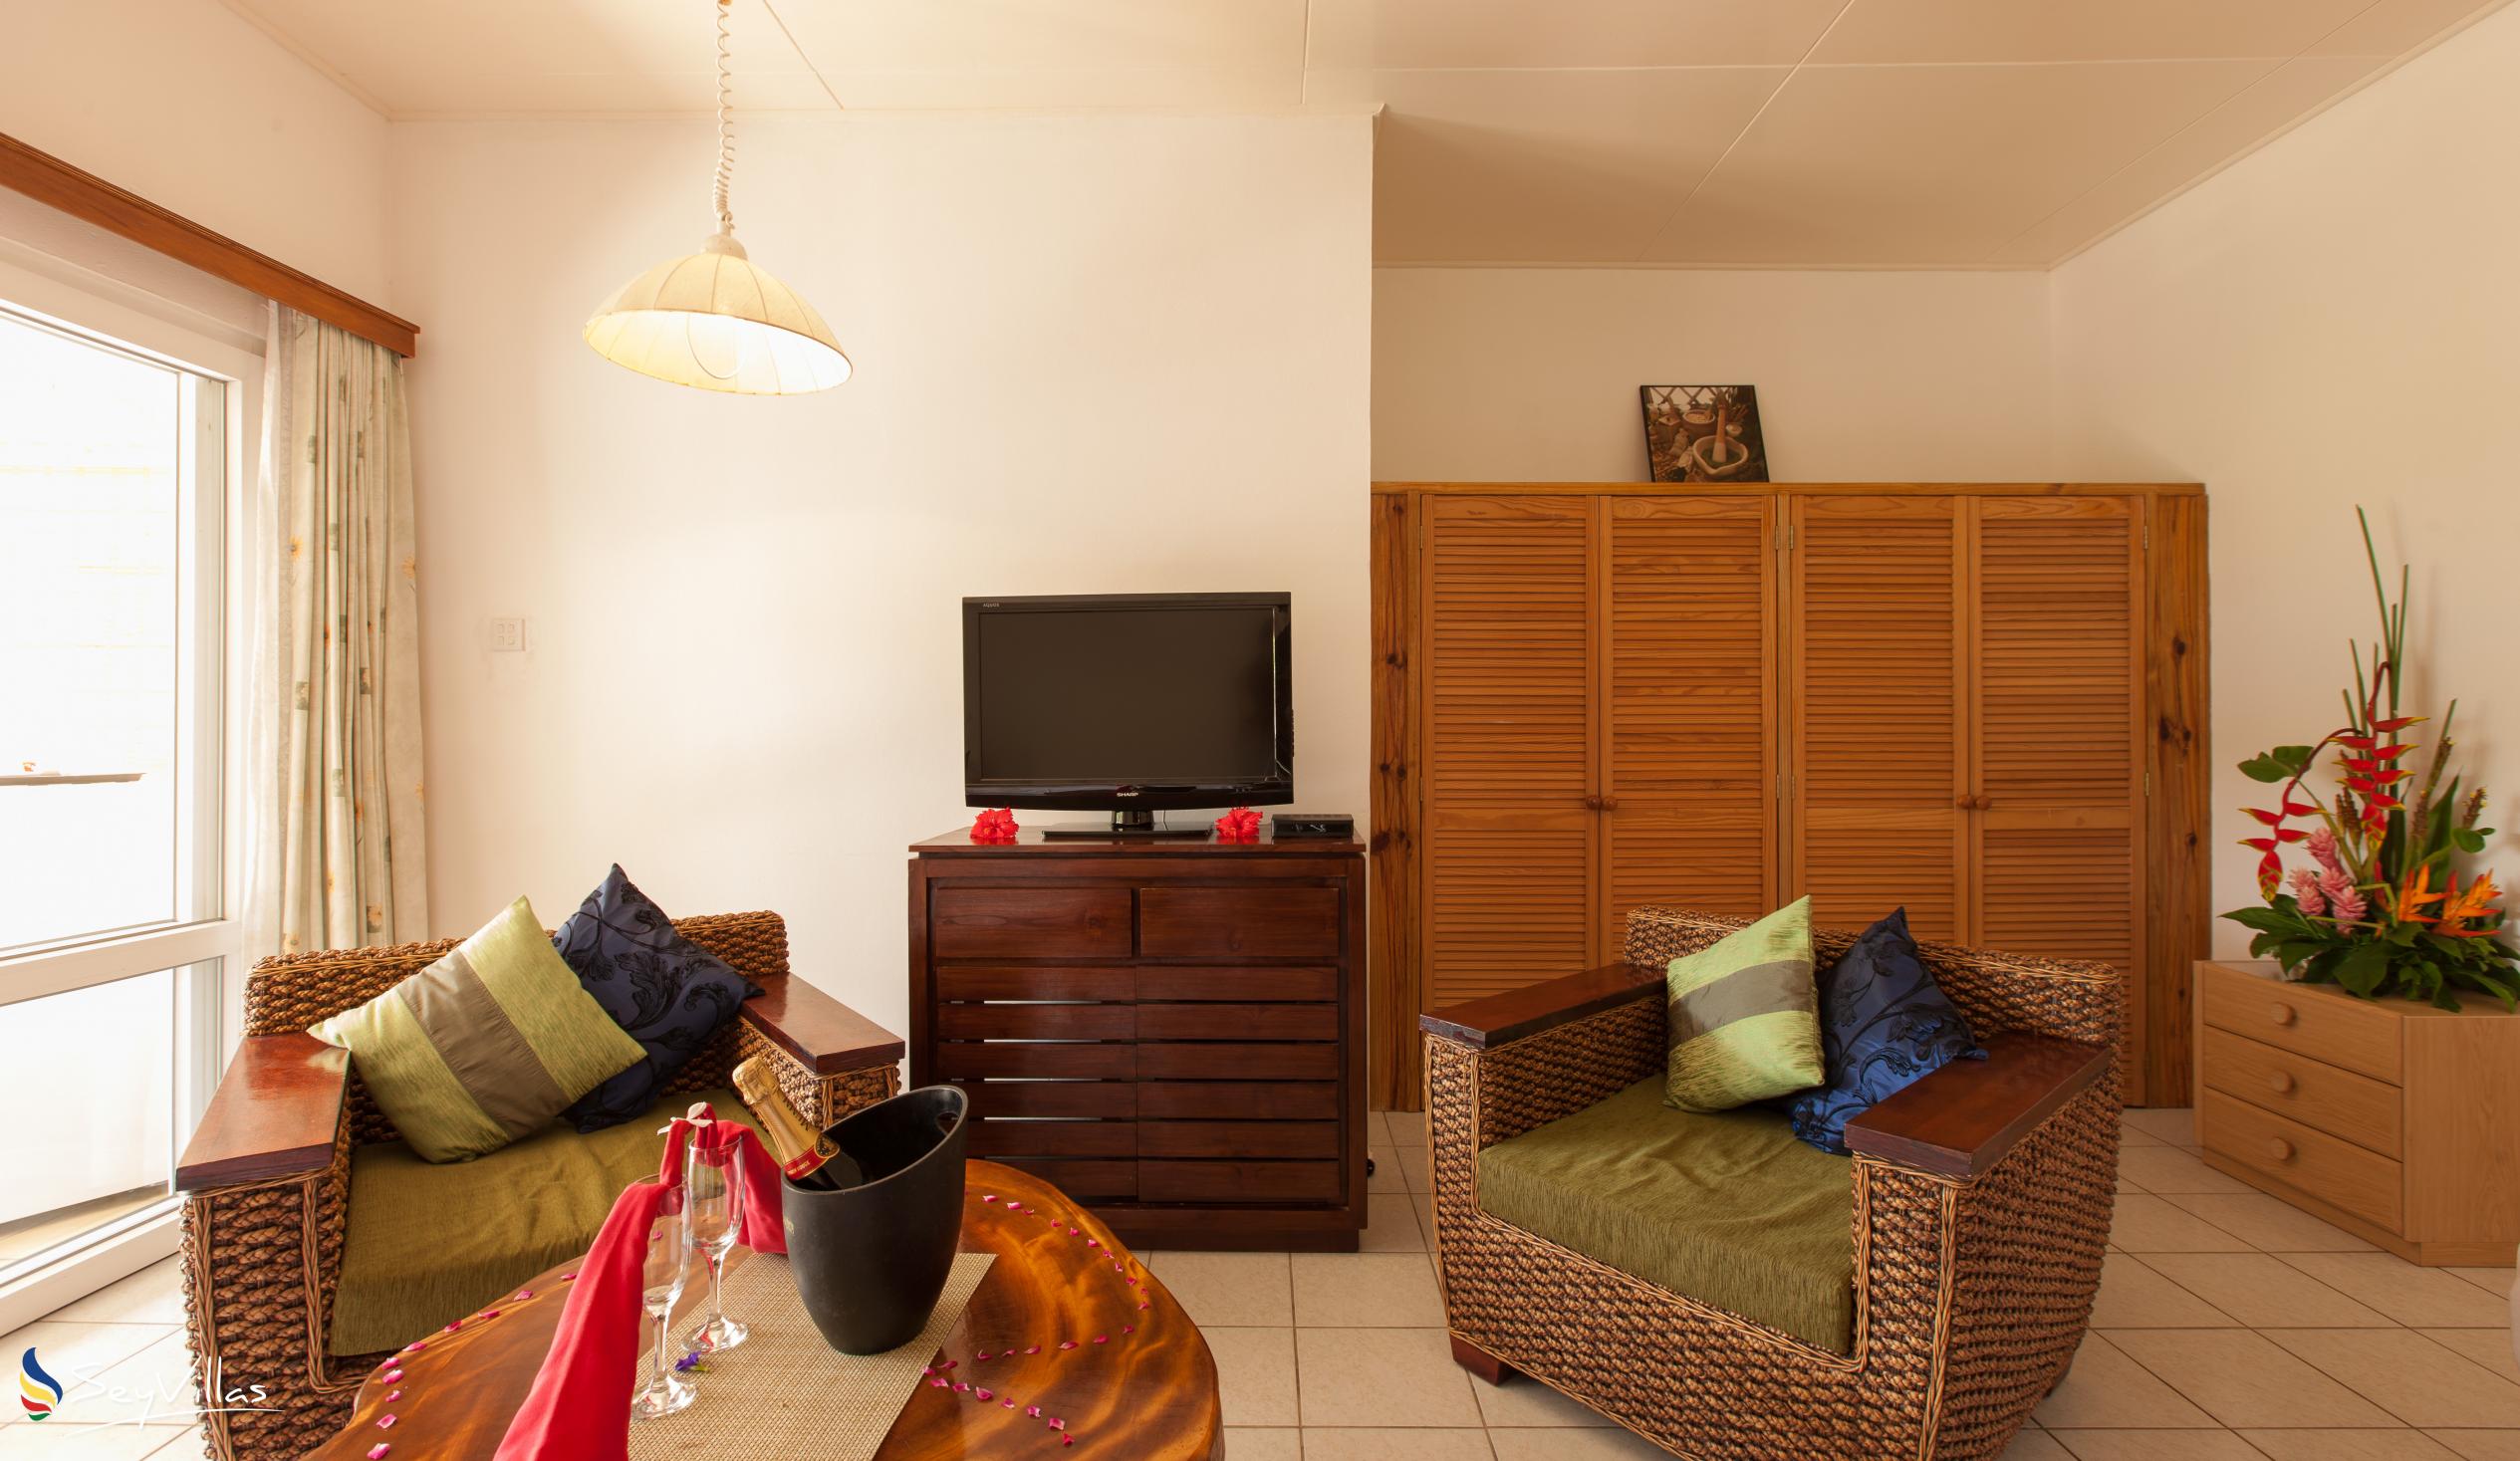 Foto 22: Le Relax St. Joseph Guest House - Chambre Supérieure - Praslin (Seychelles)